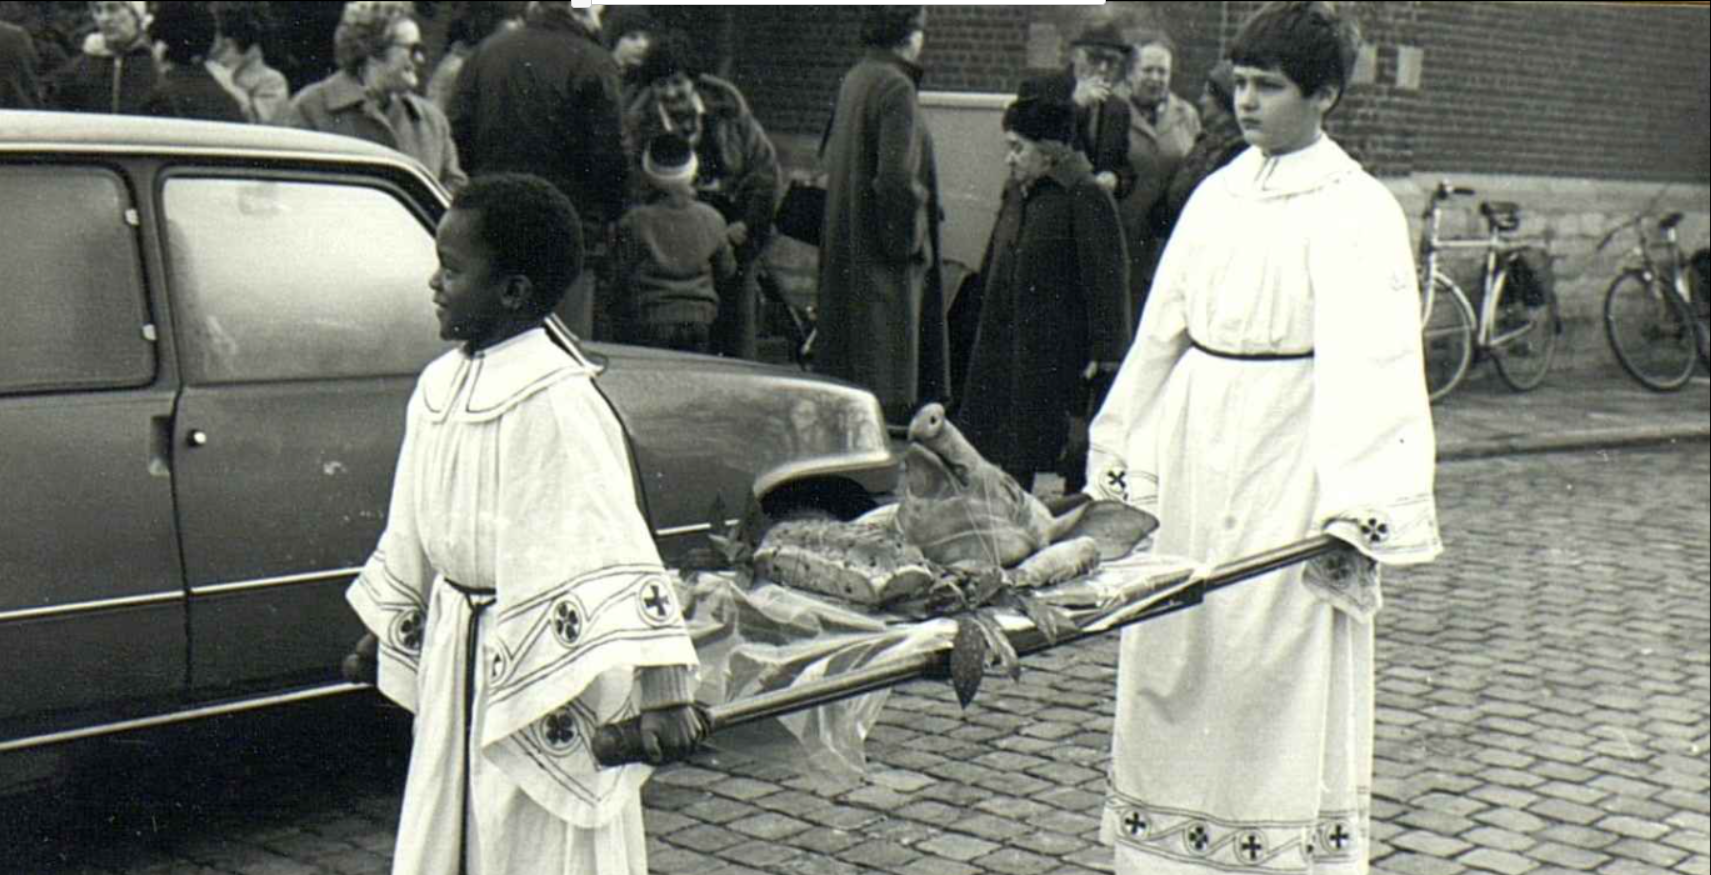 Sint-Antoniusstoet in Edegem in de jaren ‘80